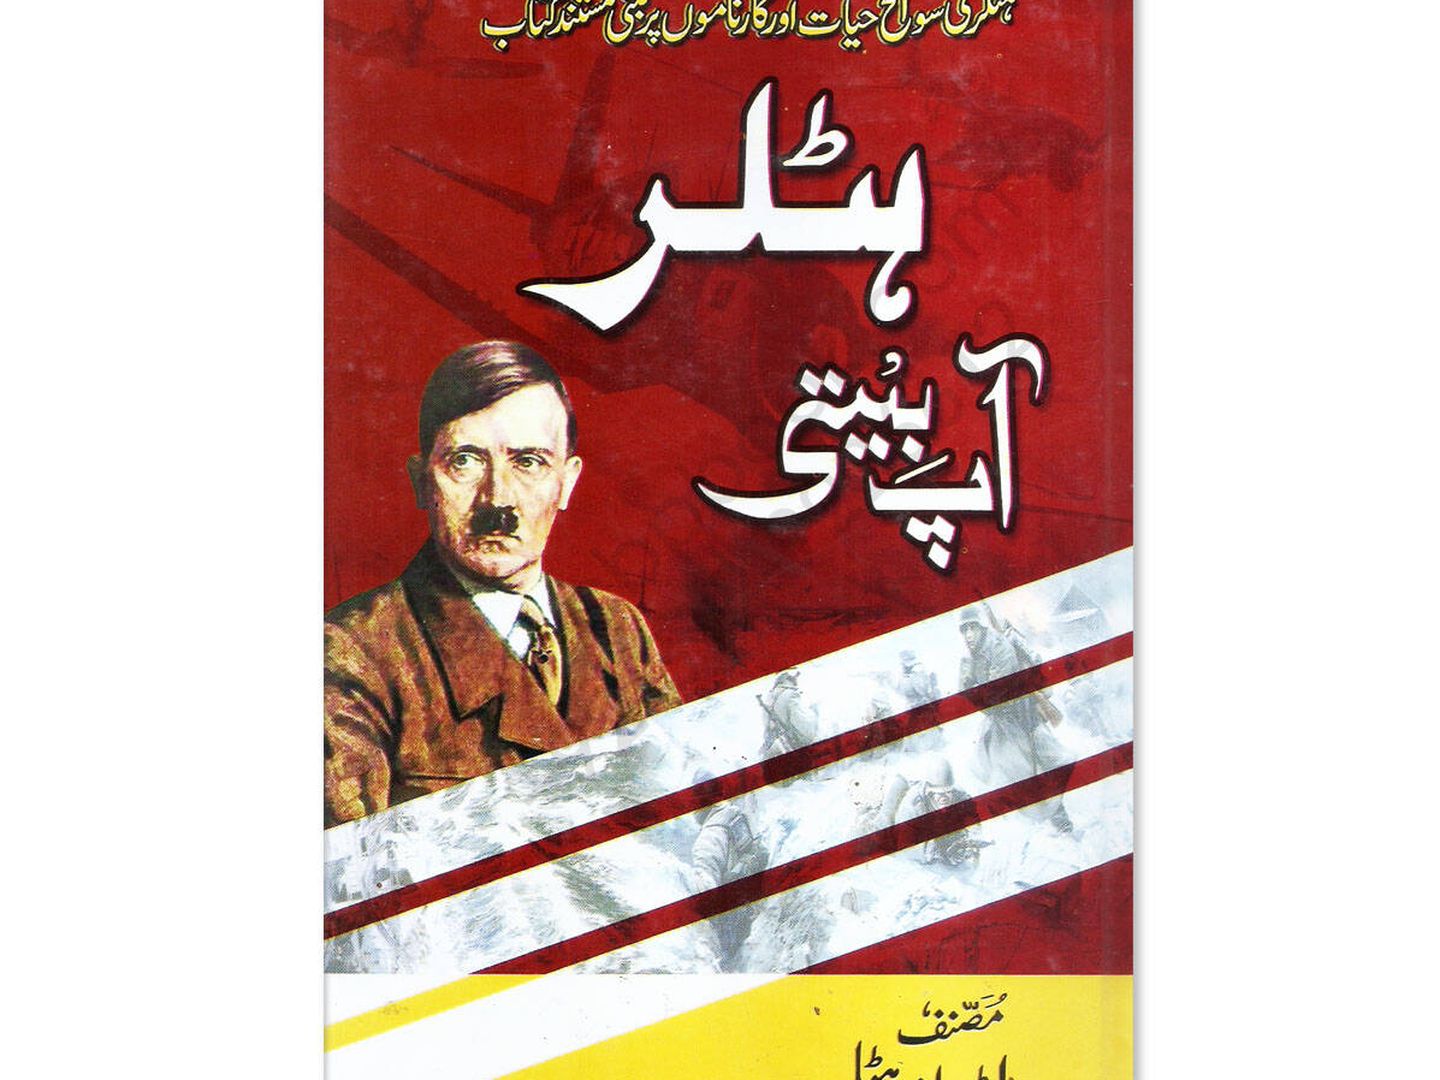 Una biografía de Hitler publicada en Pakistán.